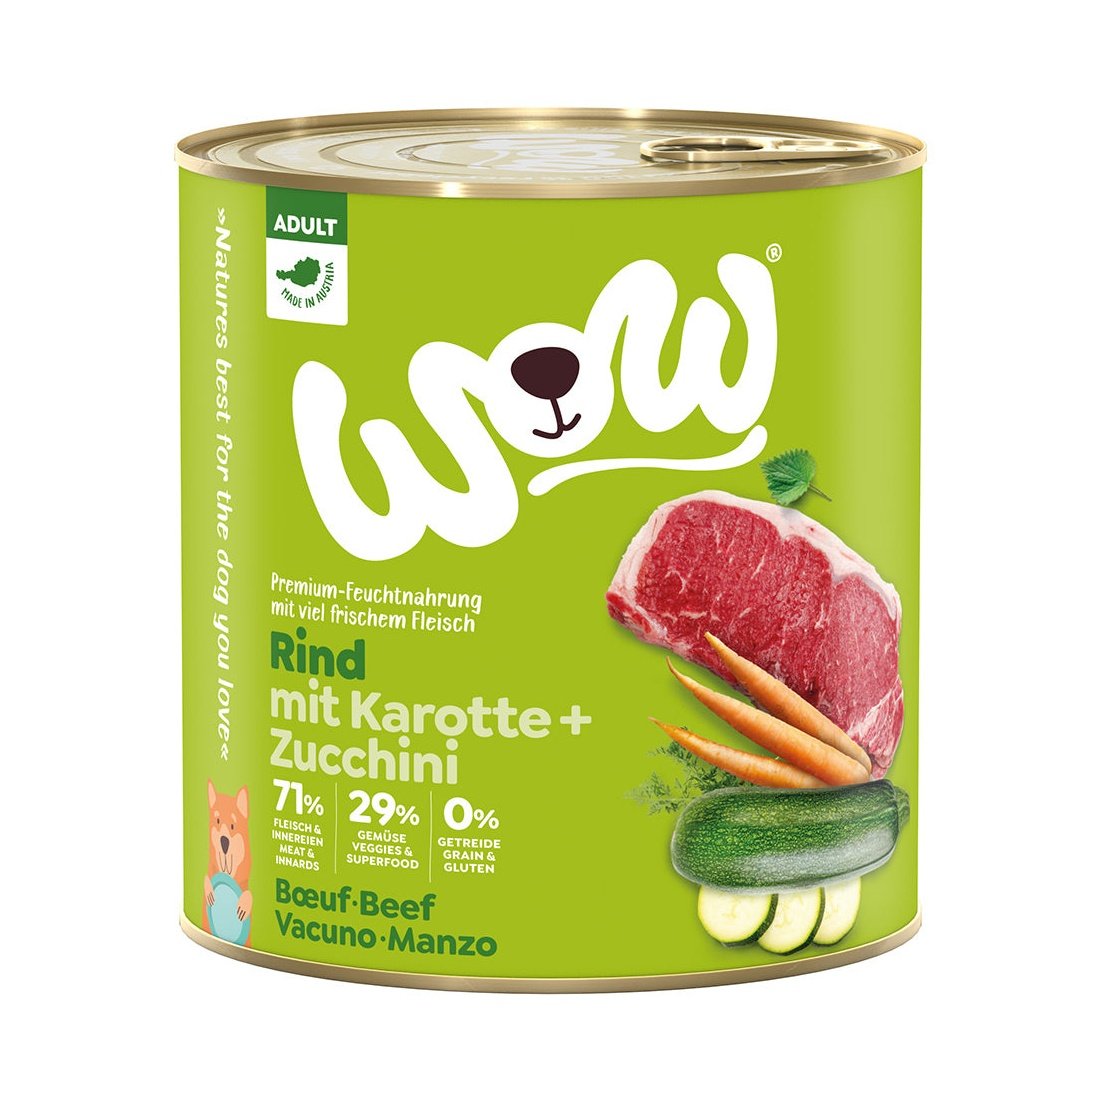 Artikel mit dem Namen WOW Rind mit Karotte und Zucchini im Shop von zoo.de , dem Onlineshop für nachhaltiges Hundefutter und Katzenfutter.